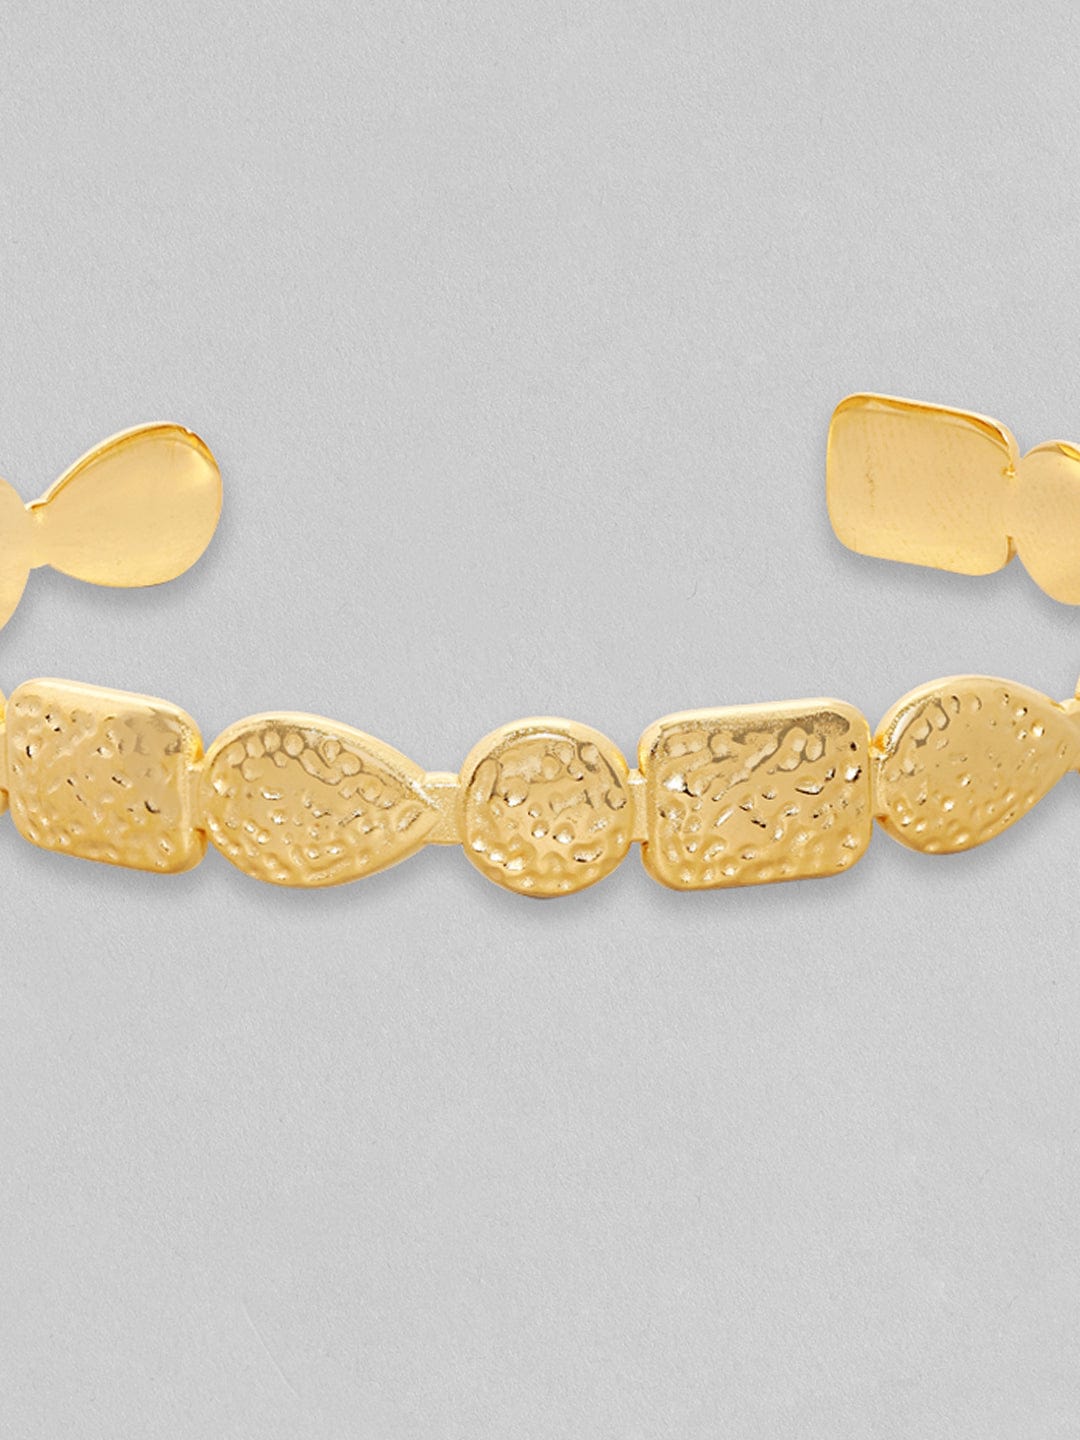 Rubans Voguish Gold Toned Stainless Steel Minimal Adjustable Bracelet Bangles & Bracelets